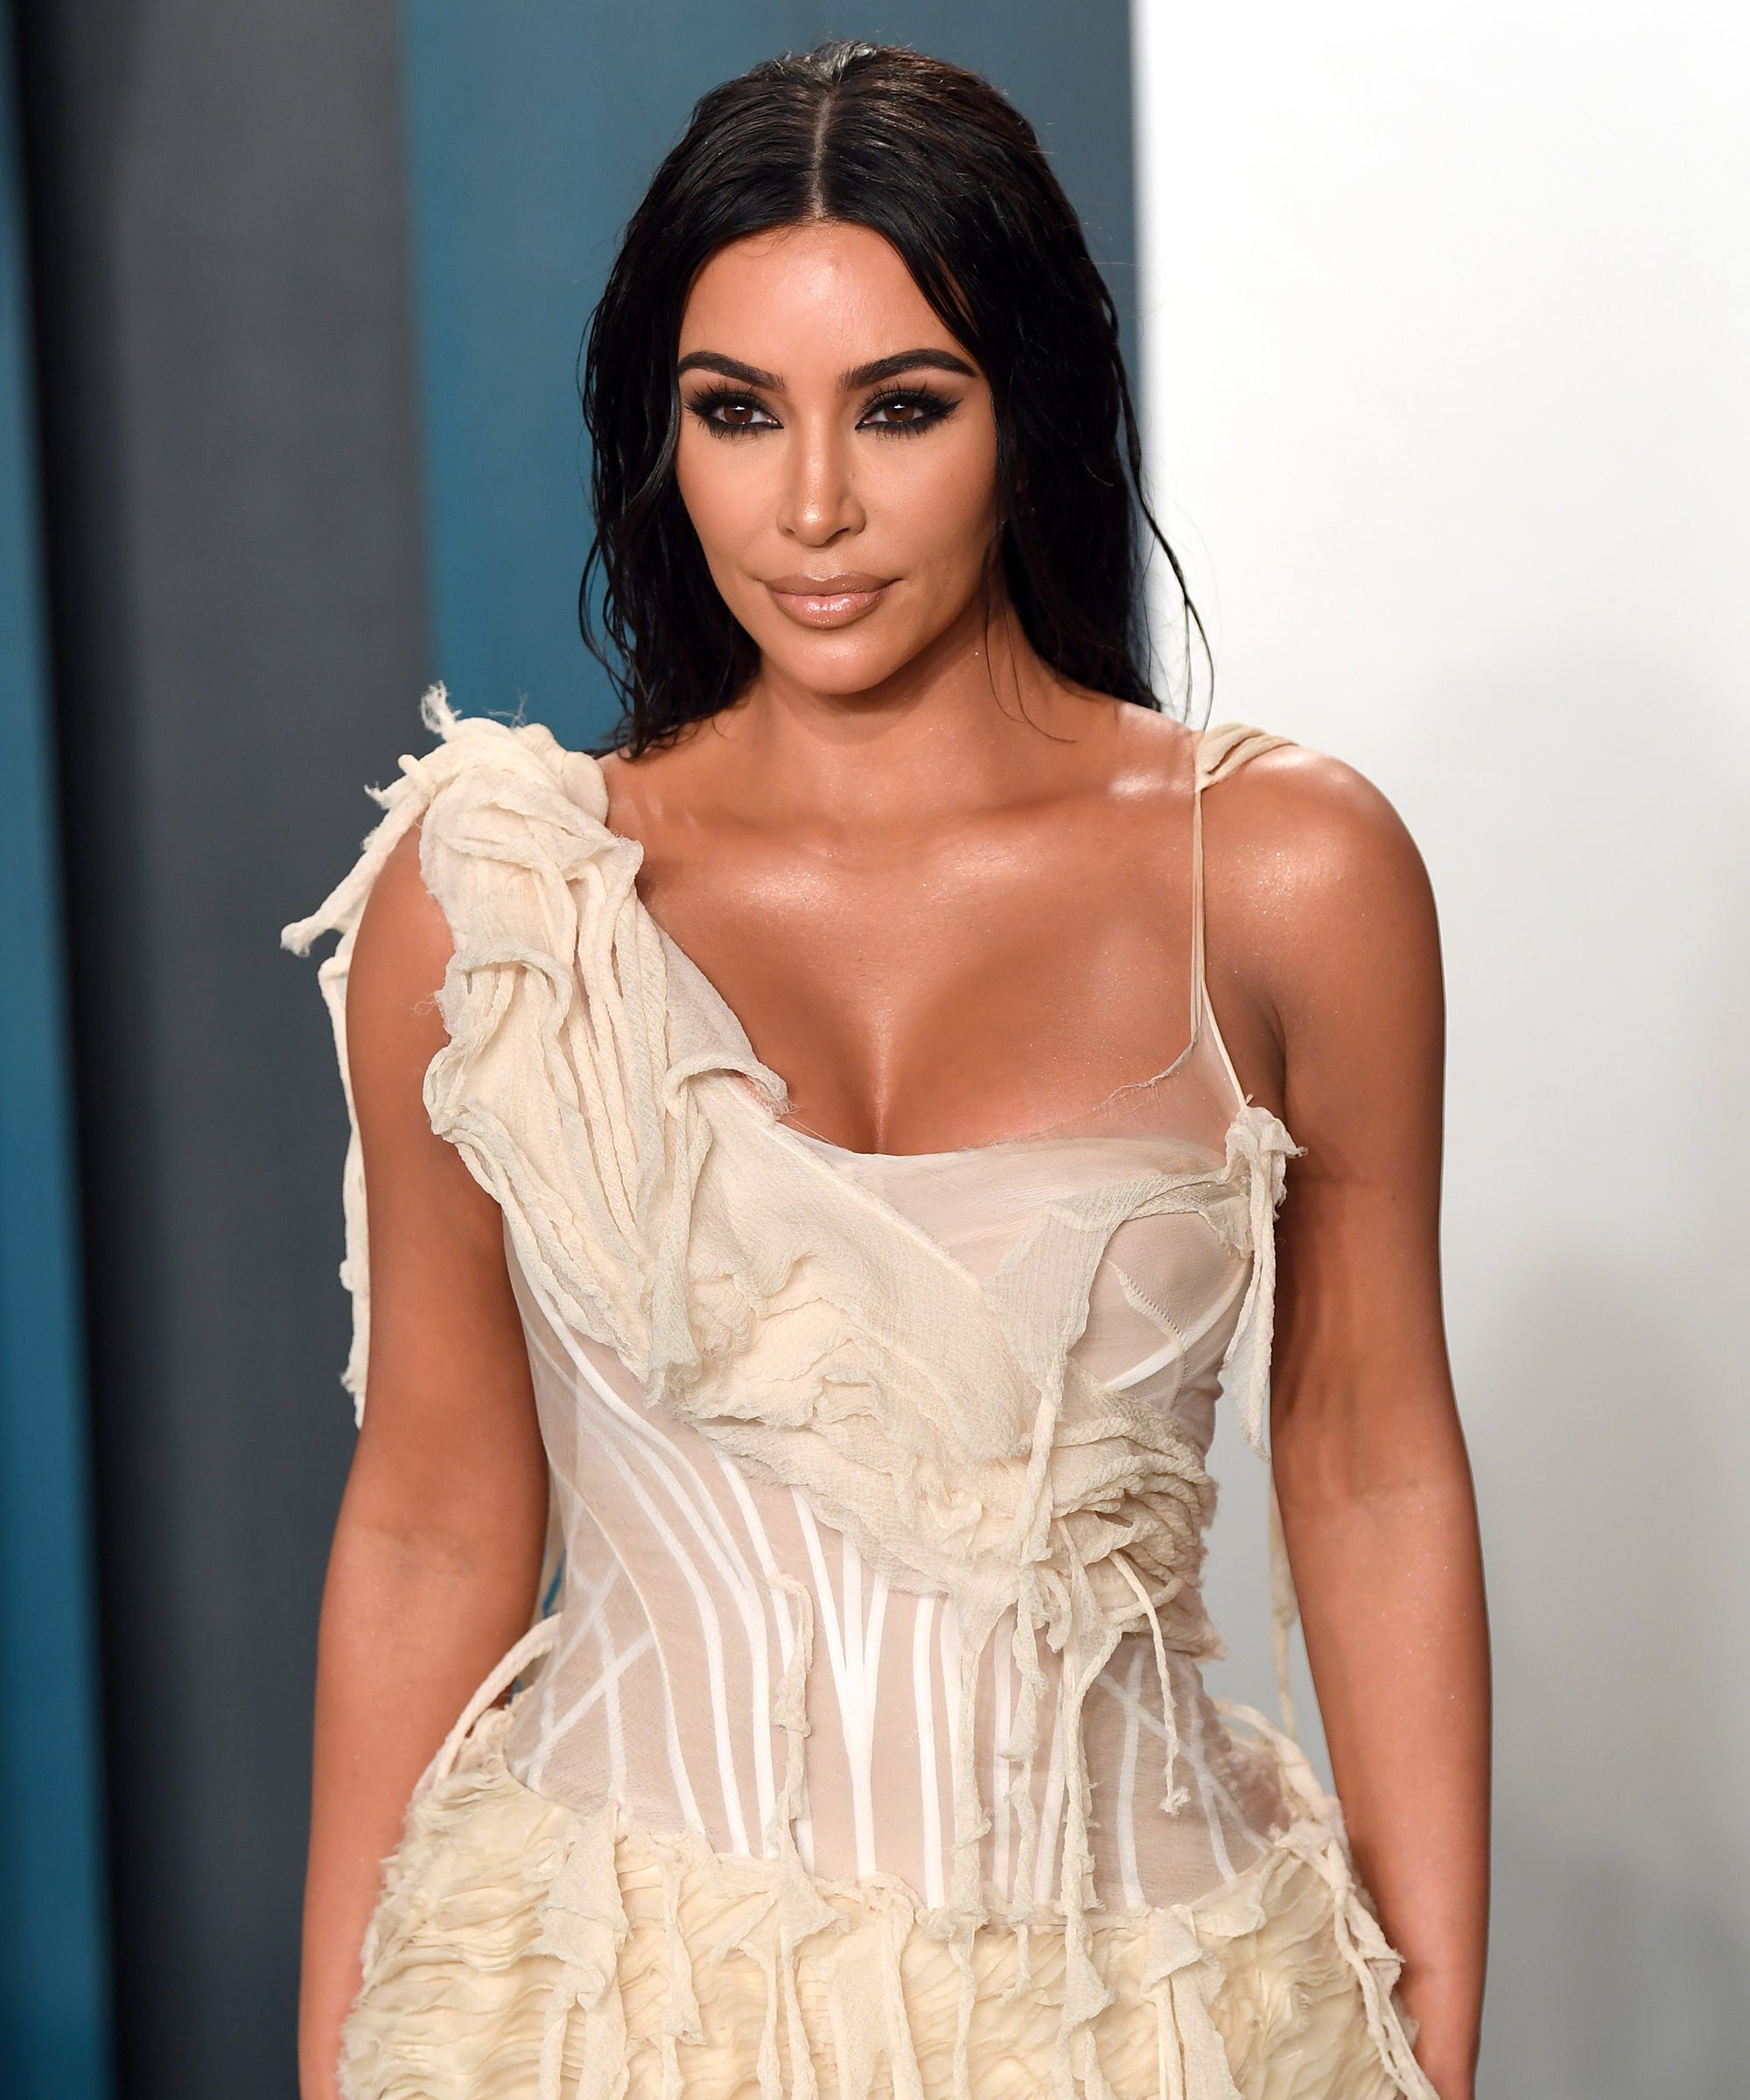 How to Organize Your Closet Like Kim Kardashian West